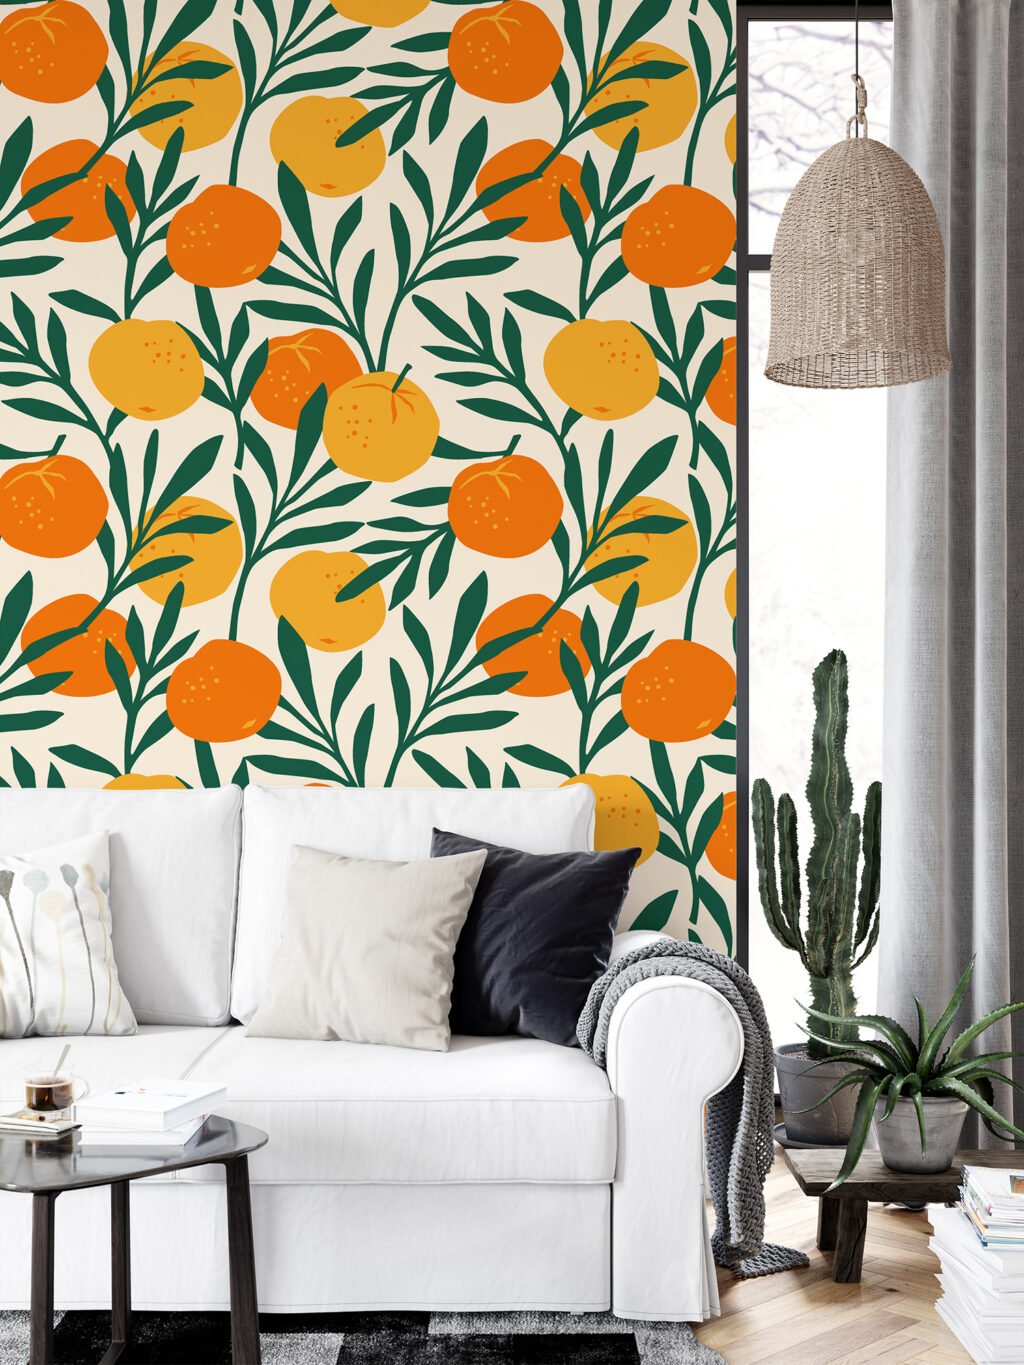 Portakal Desenli Duvar Kağıdı, Canlı Yeşil Yapraklarla Narenciye Duvar Posteri Çiçekli Duvar Kağıtları 4